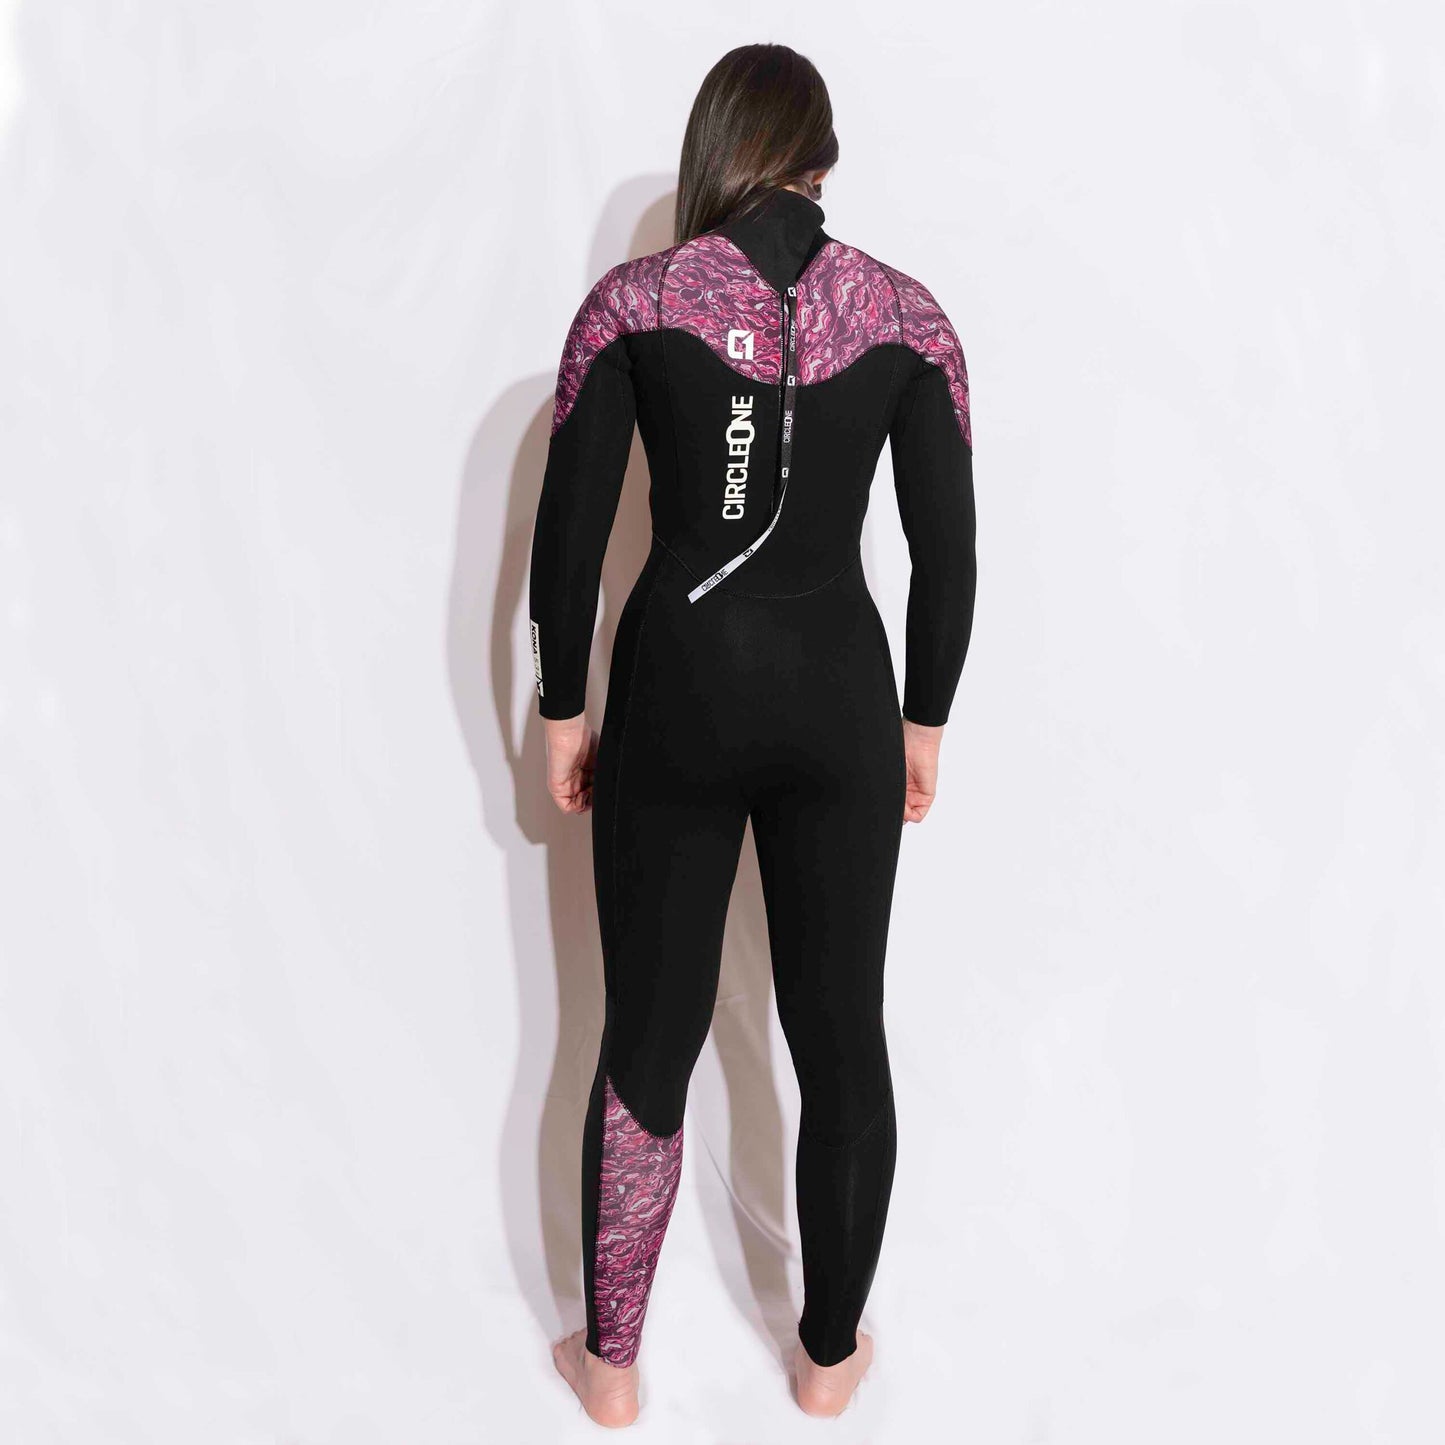 Womens Winter Wetsuit – Kona 5/4/3mm GBS Back Zip